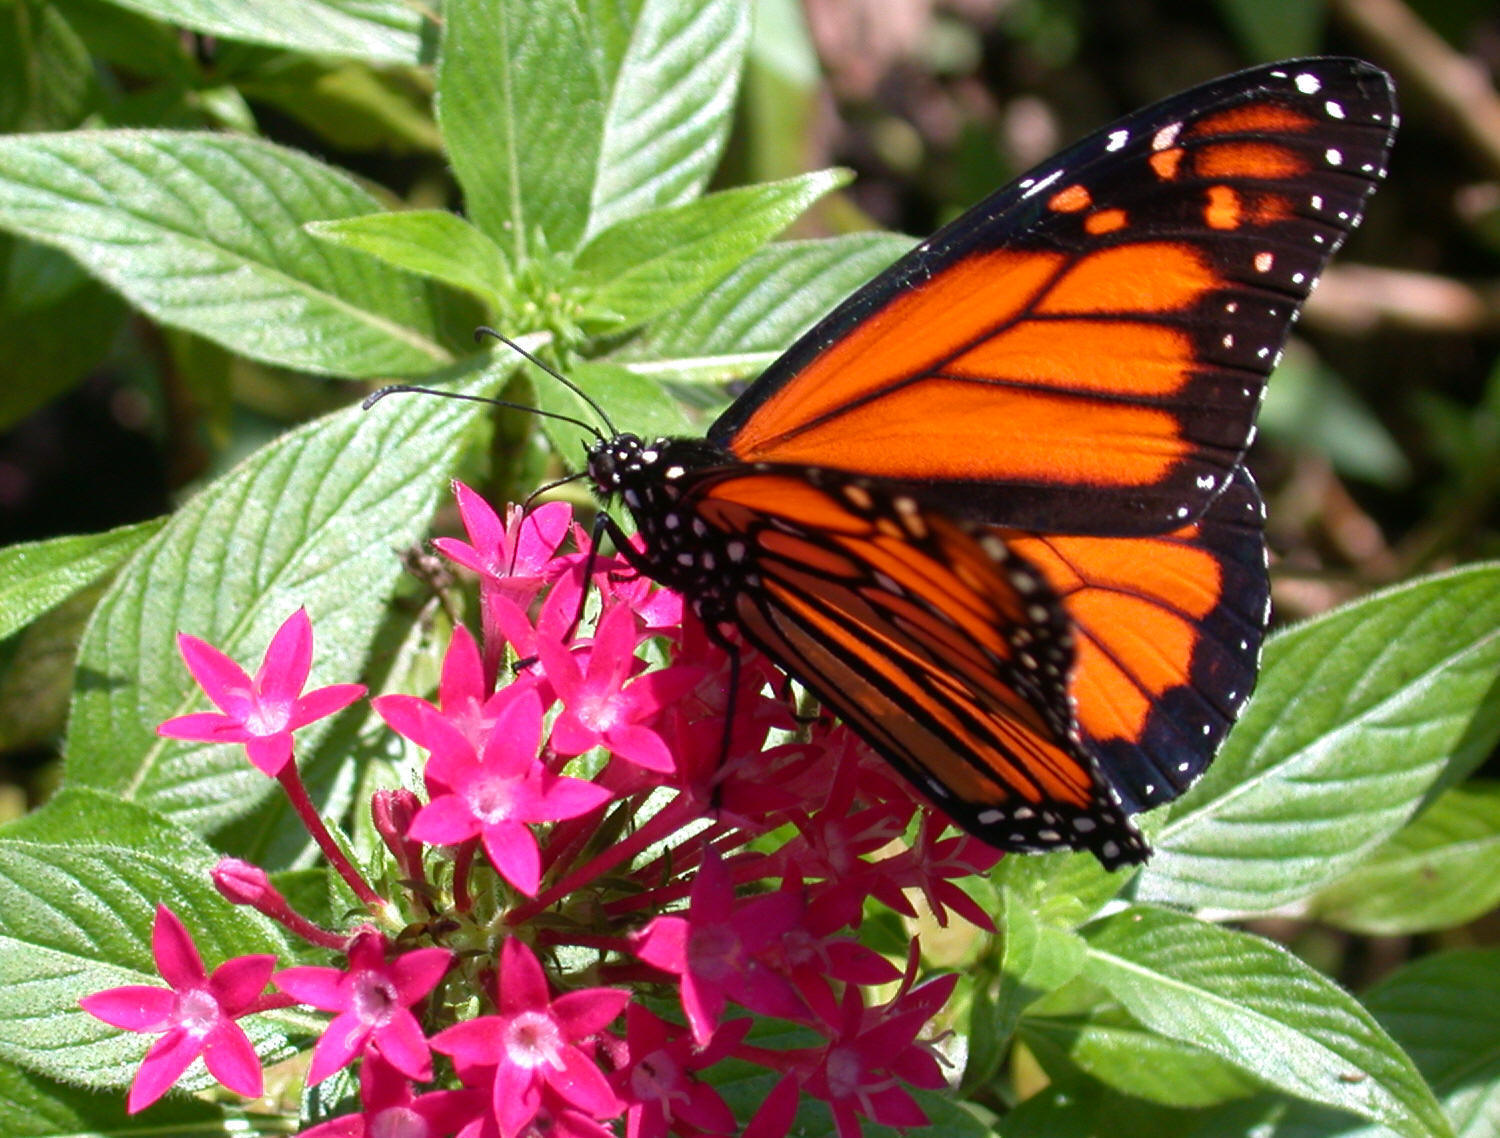 Adult Monarch, Taken by: Dr. Thomas Volk, University of Wisconsin- La Crosse